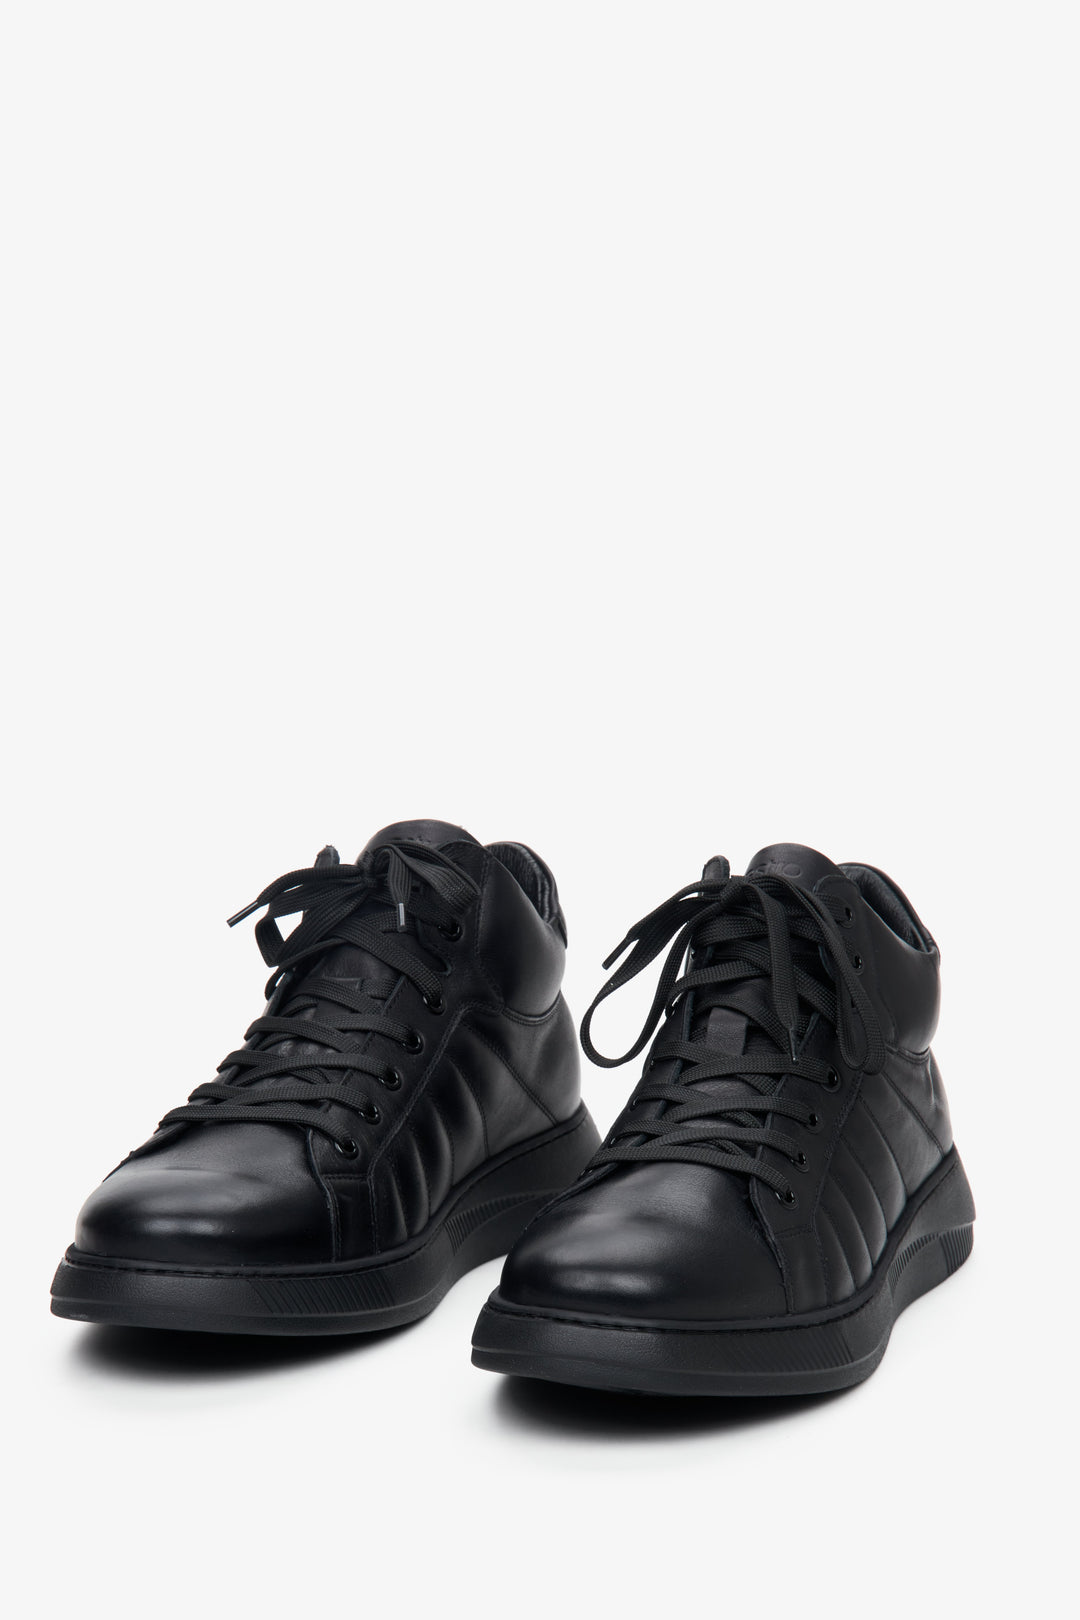 Wysokie, męskie sneakersy ze skóry naturalnej w kolorze czarnym ze sznurowaniem marki Estro - prezentacja przedniej części buta.